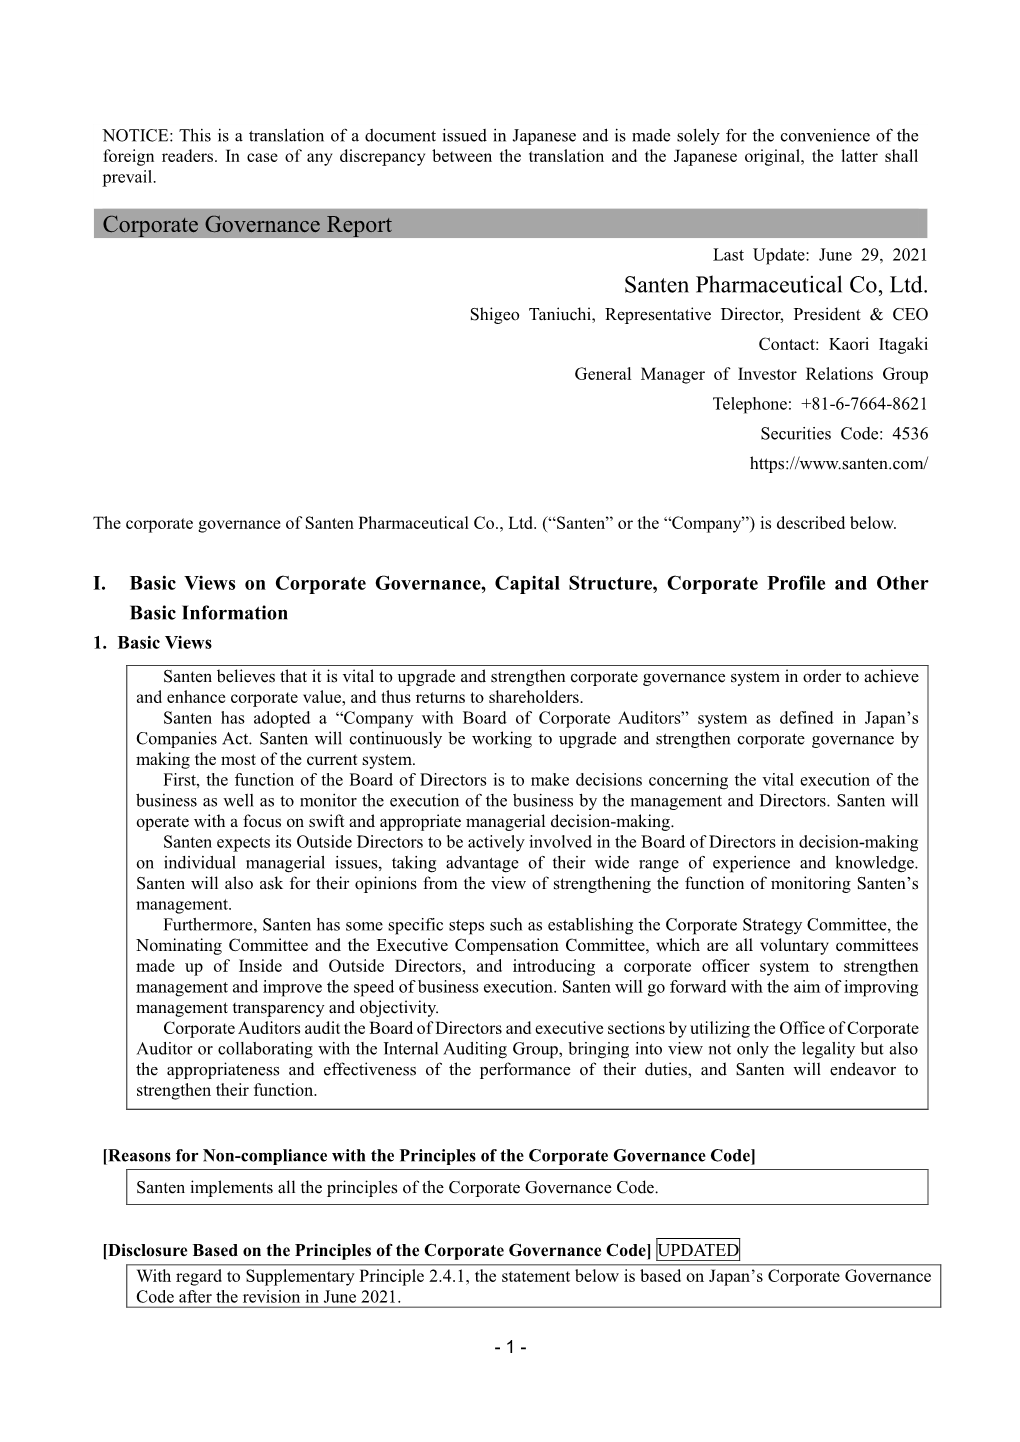 Corporate Governance Report Santen Pharmaceutical Co, Ltd